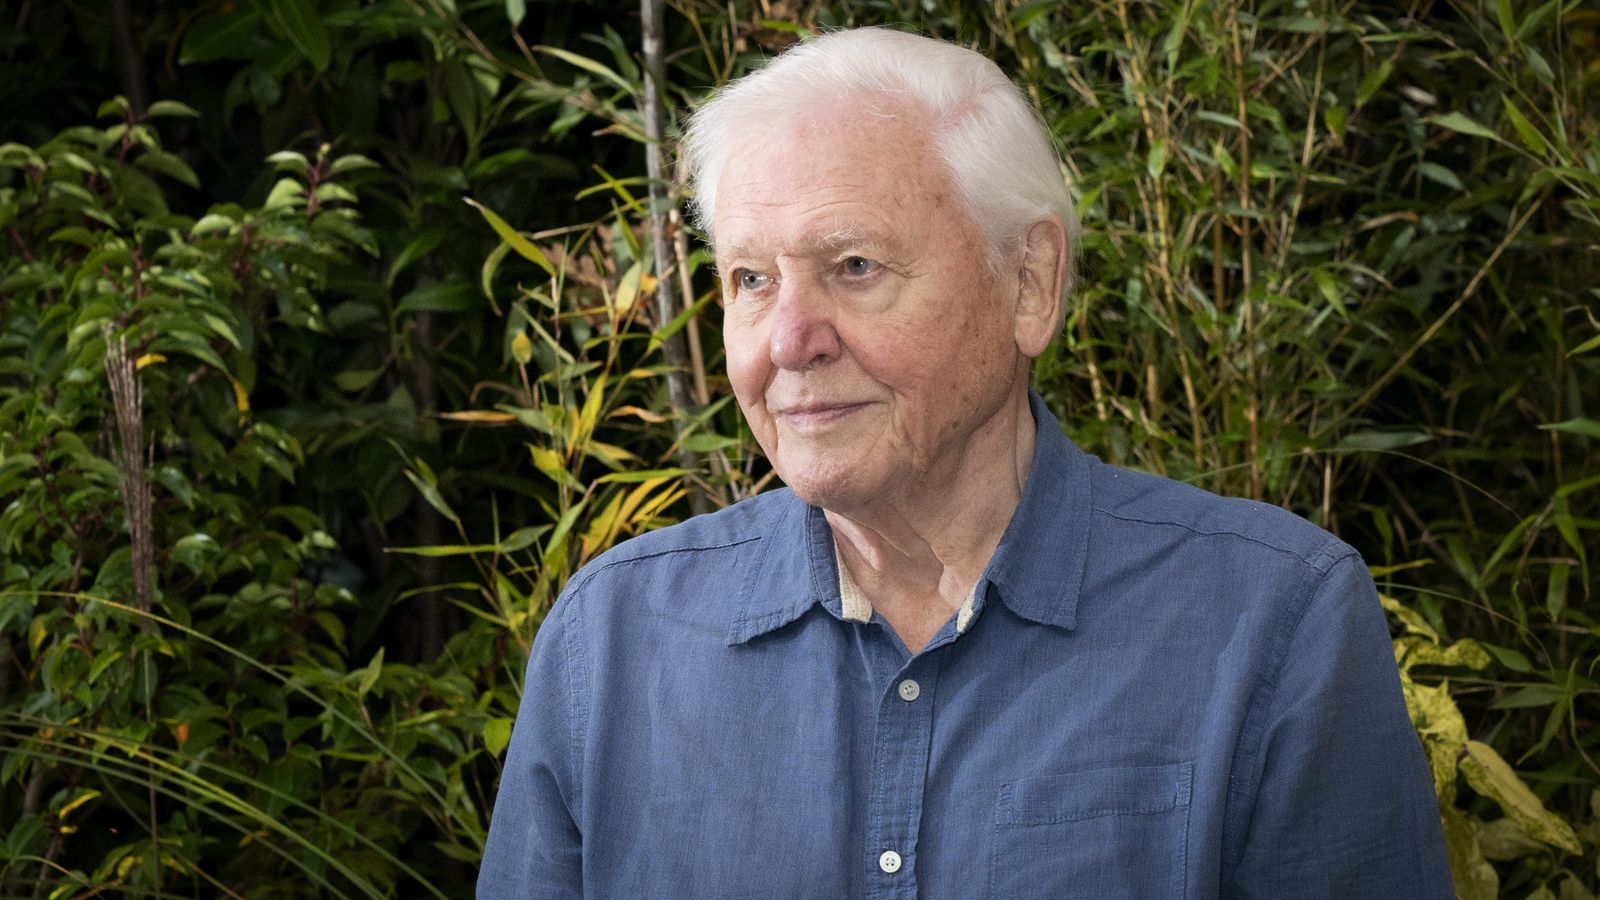 Sir David Attenborough dianugerahi gelar bangsawan untuk layanan televisi dan konservasi untuk kedua kalinya |  Berita Inggris